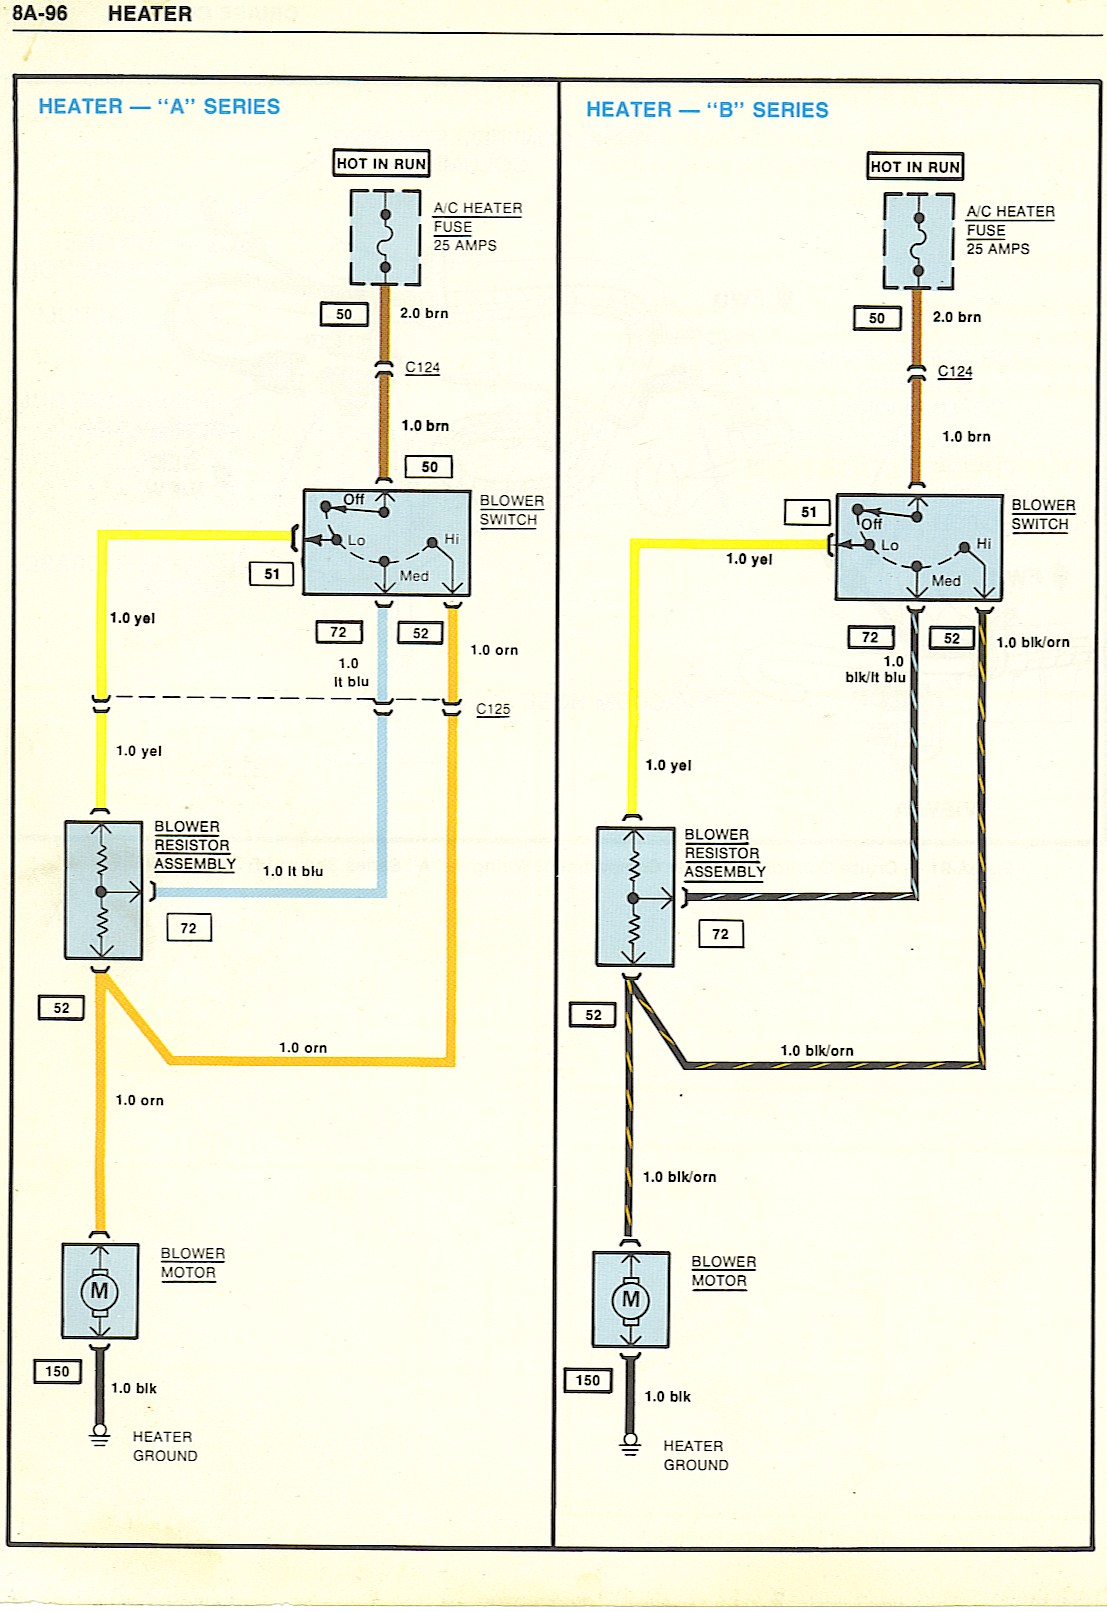 Under dash power sources? | GBodyForum - 1978-1988 General Motors A/G